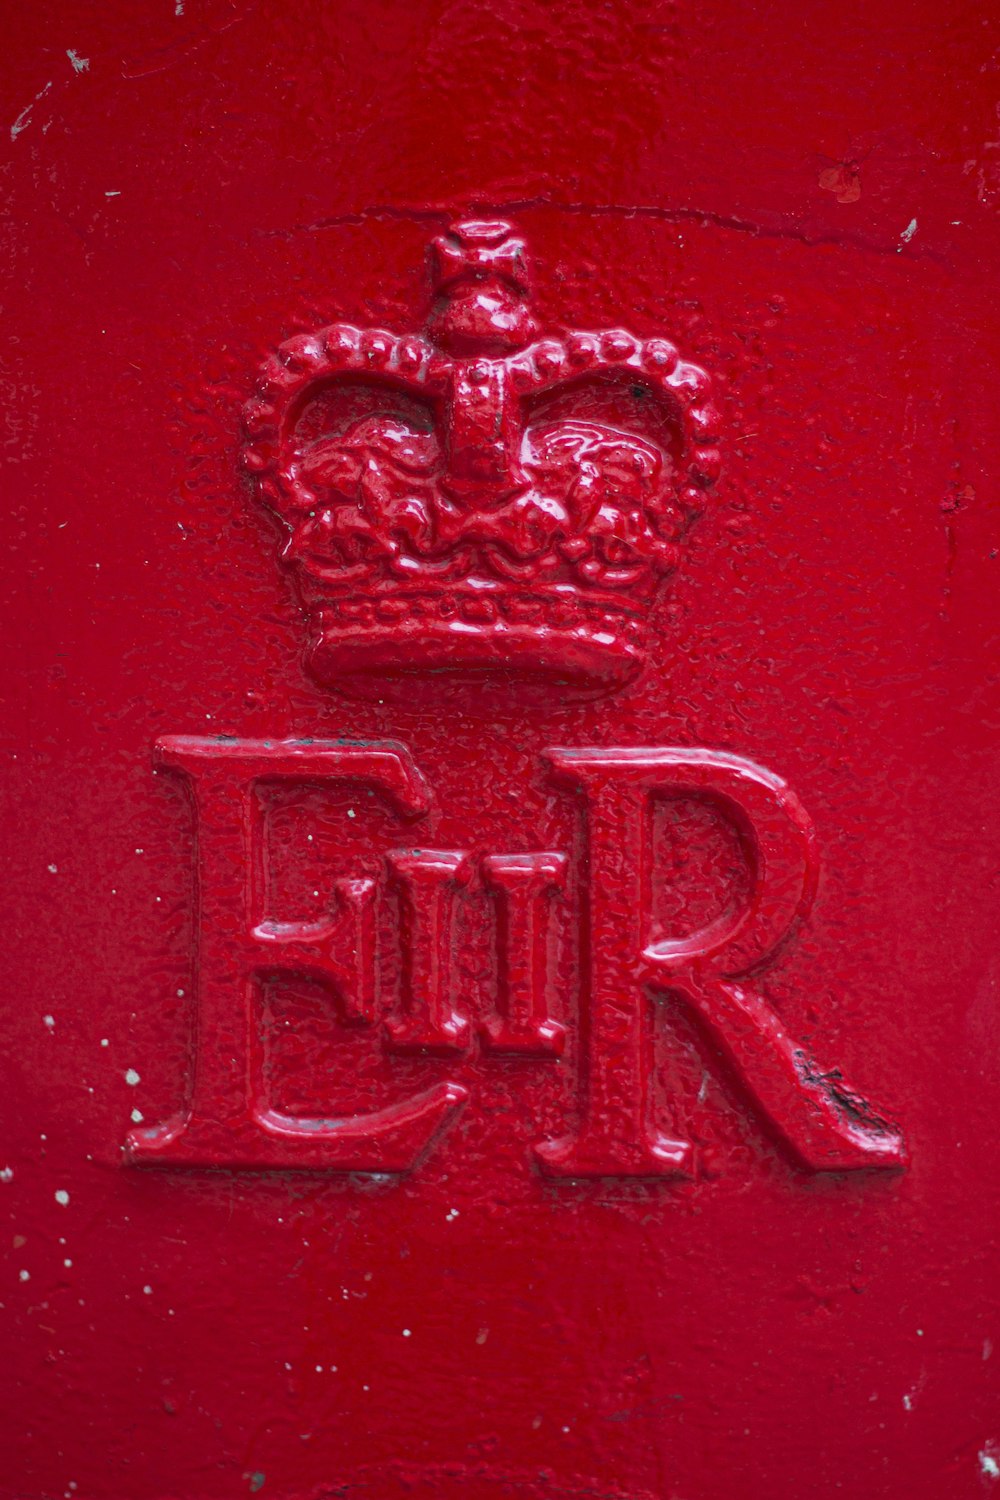 EIIR logo